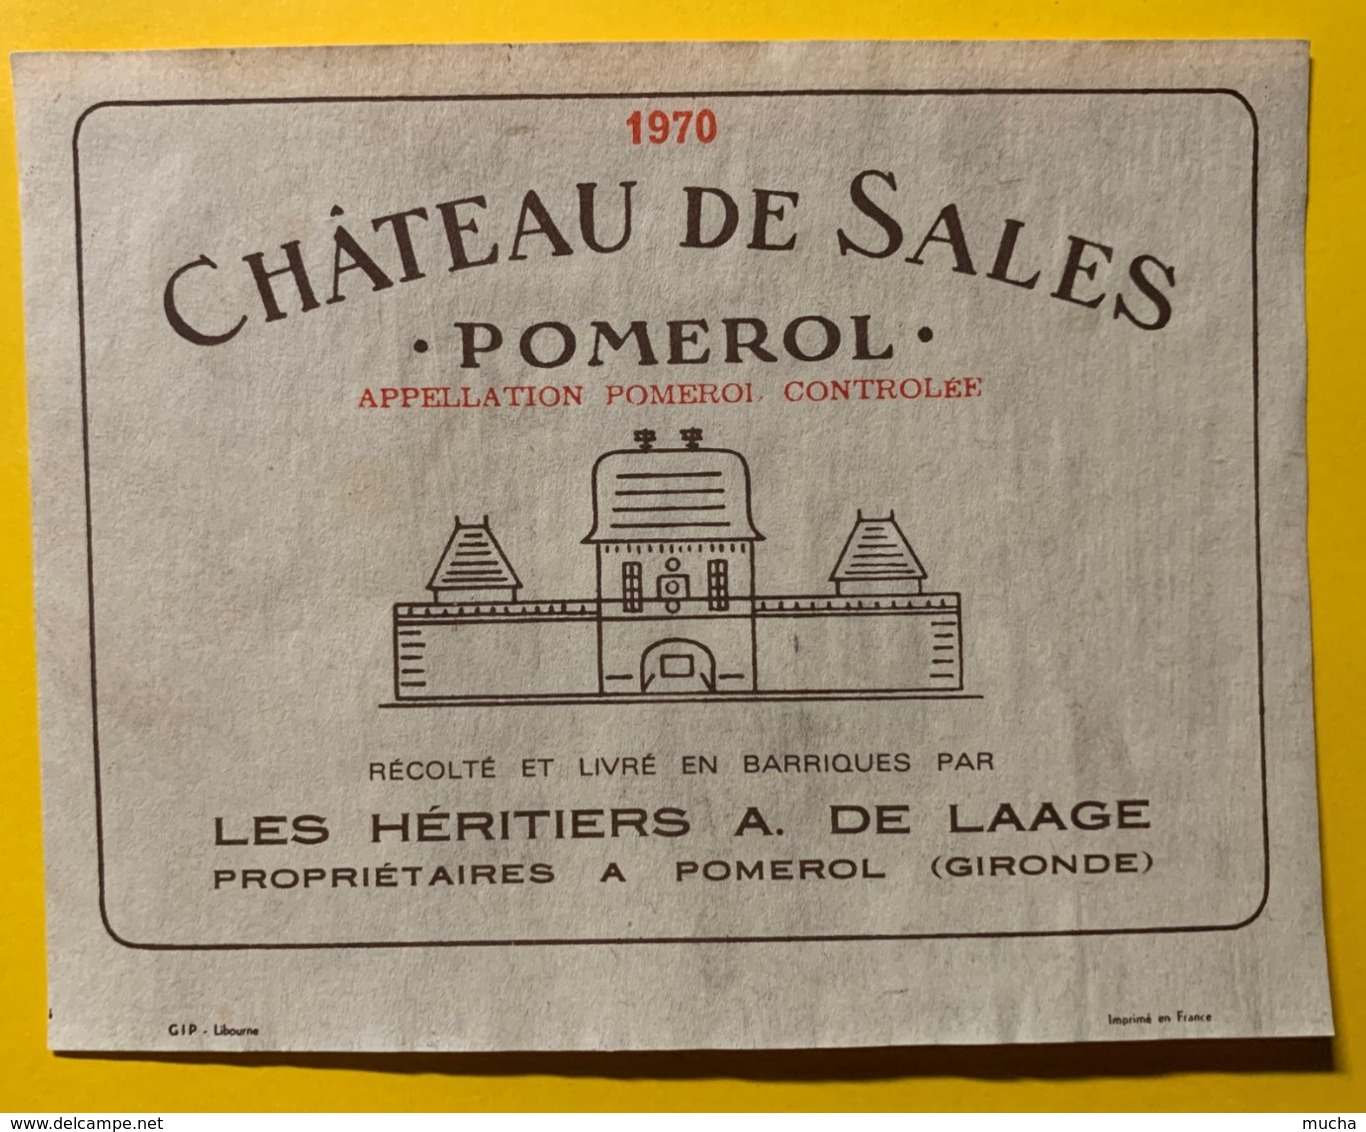 12179 - Château De Sales 1970 Pomerol - Bordeaux